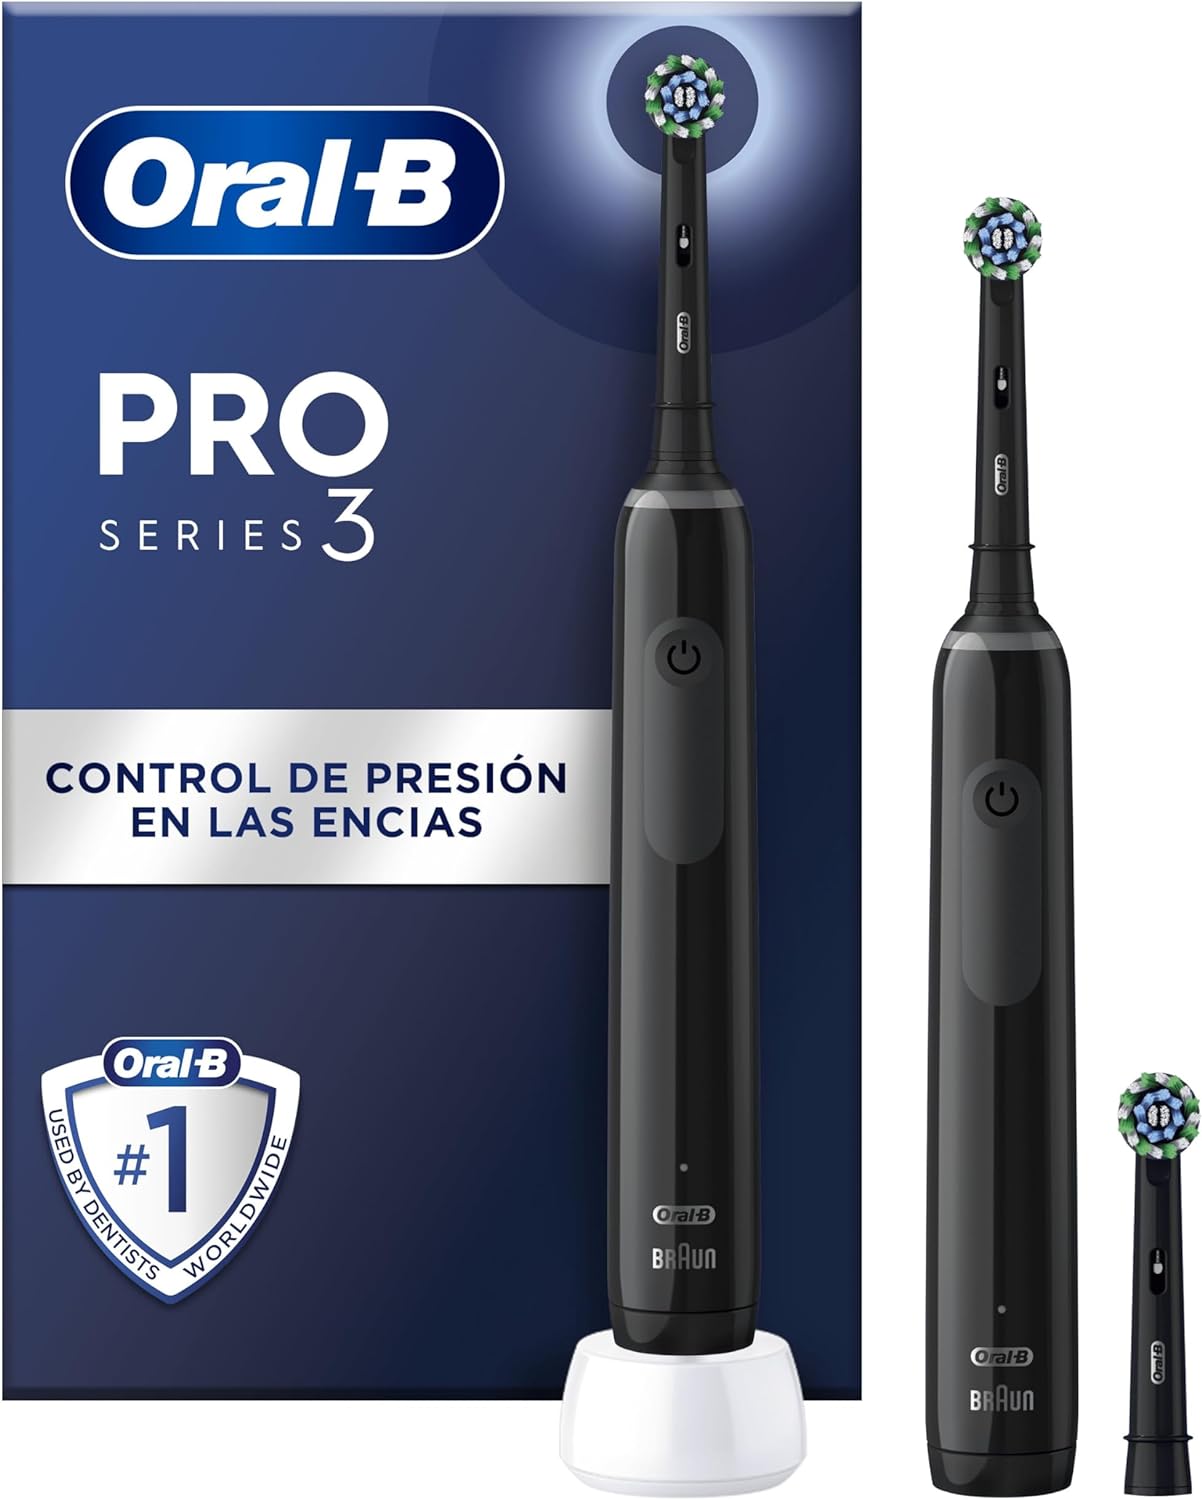 Oral-B Pro 3 3900 vs Oral-B Pro 3 3000 vs Oral-B Pro 3 3500